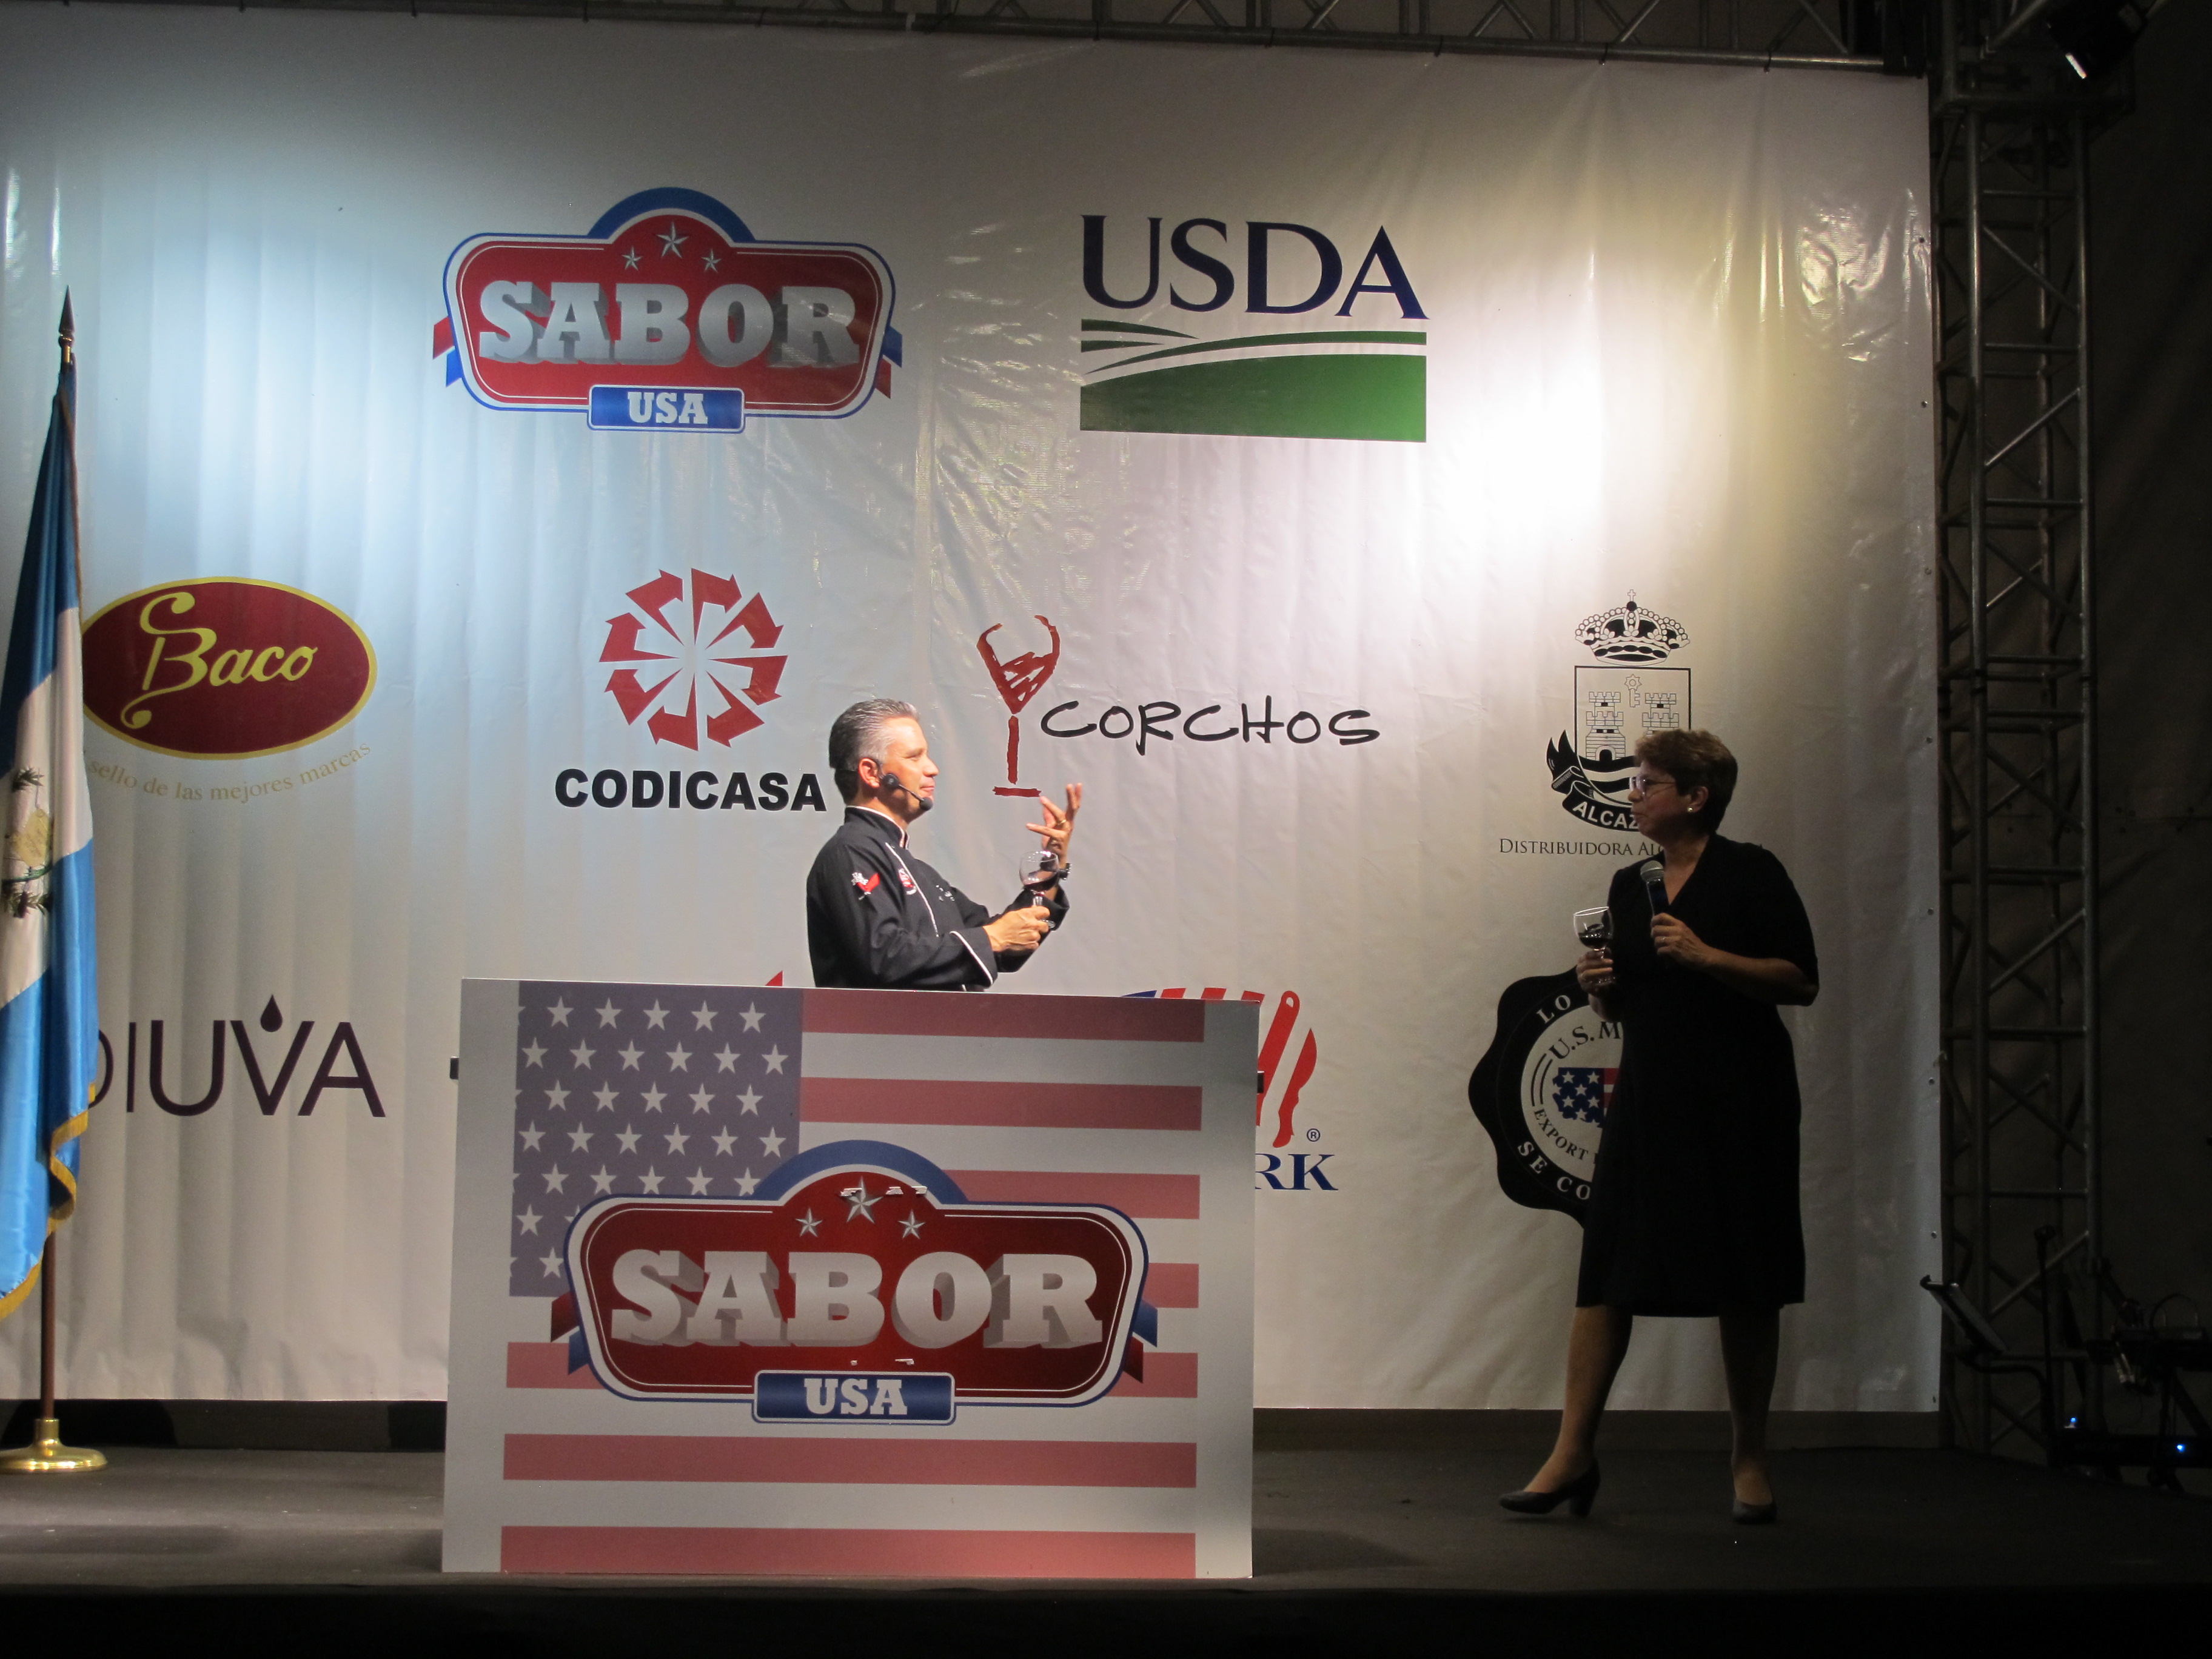 El chef Pablo Lou fue el encargado de explicar las diferentes combinaciones de carne y vinos americanos en actividad Sabor USA que se llevó a cabo en la casa del Embajador de Estados Unidos en Guatemala. (Foto Prensa Libre: Natiana Gándara)

